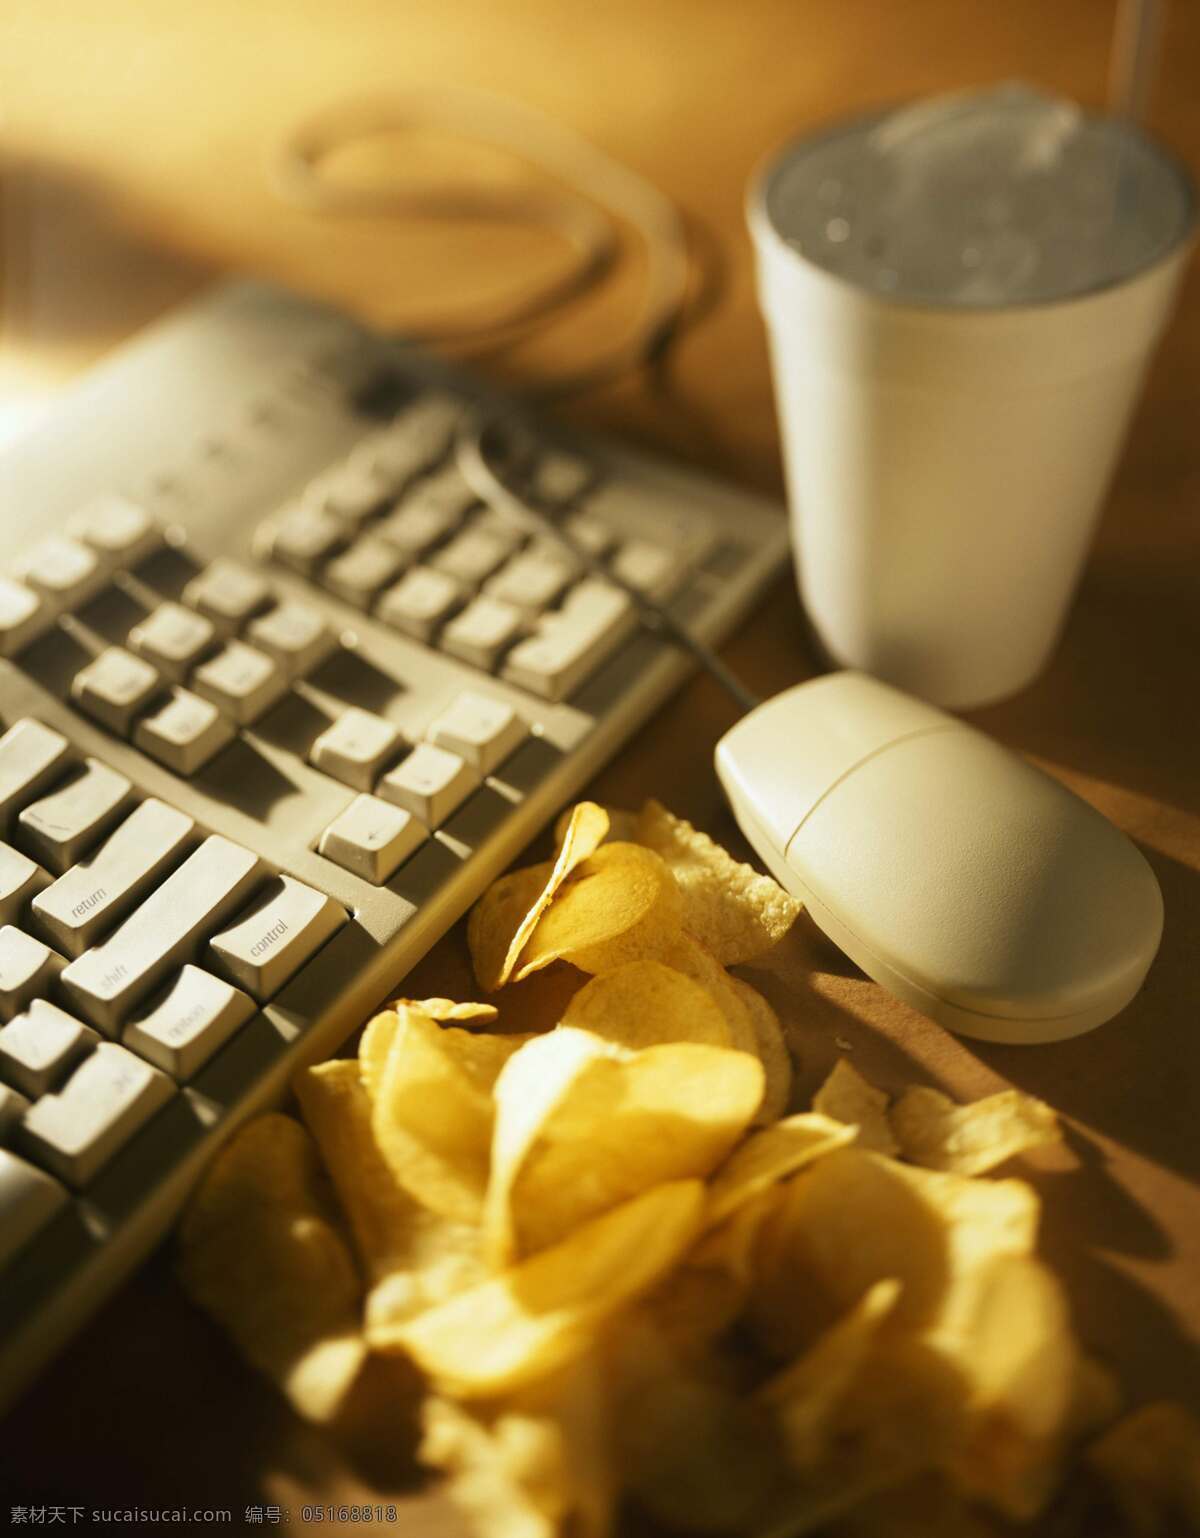 键盘 薯片 电脑键盘 网虫生活 薯片和键盘 网络生活 网瘾 风景 生活 旅游餐饮